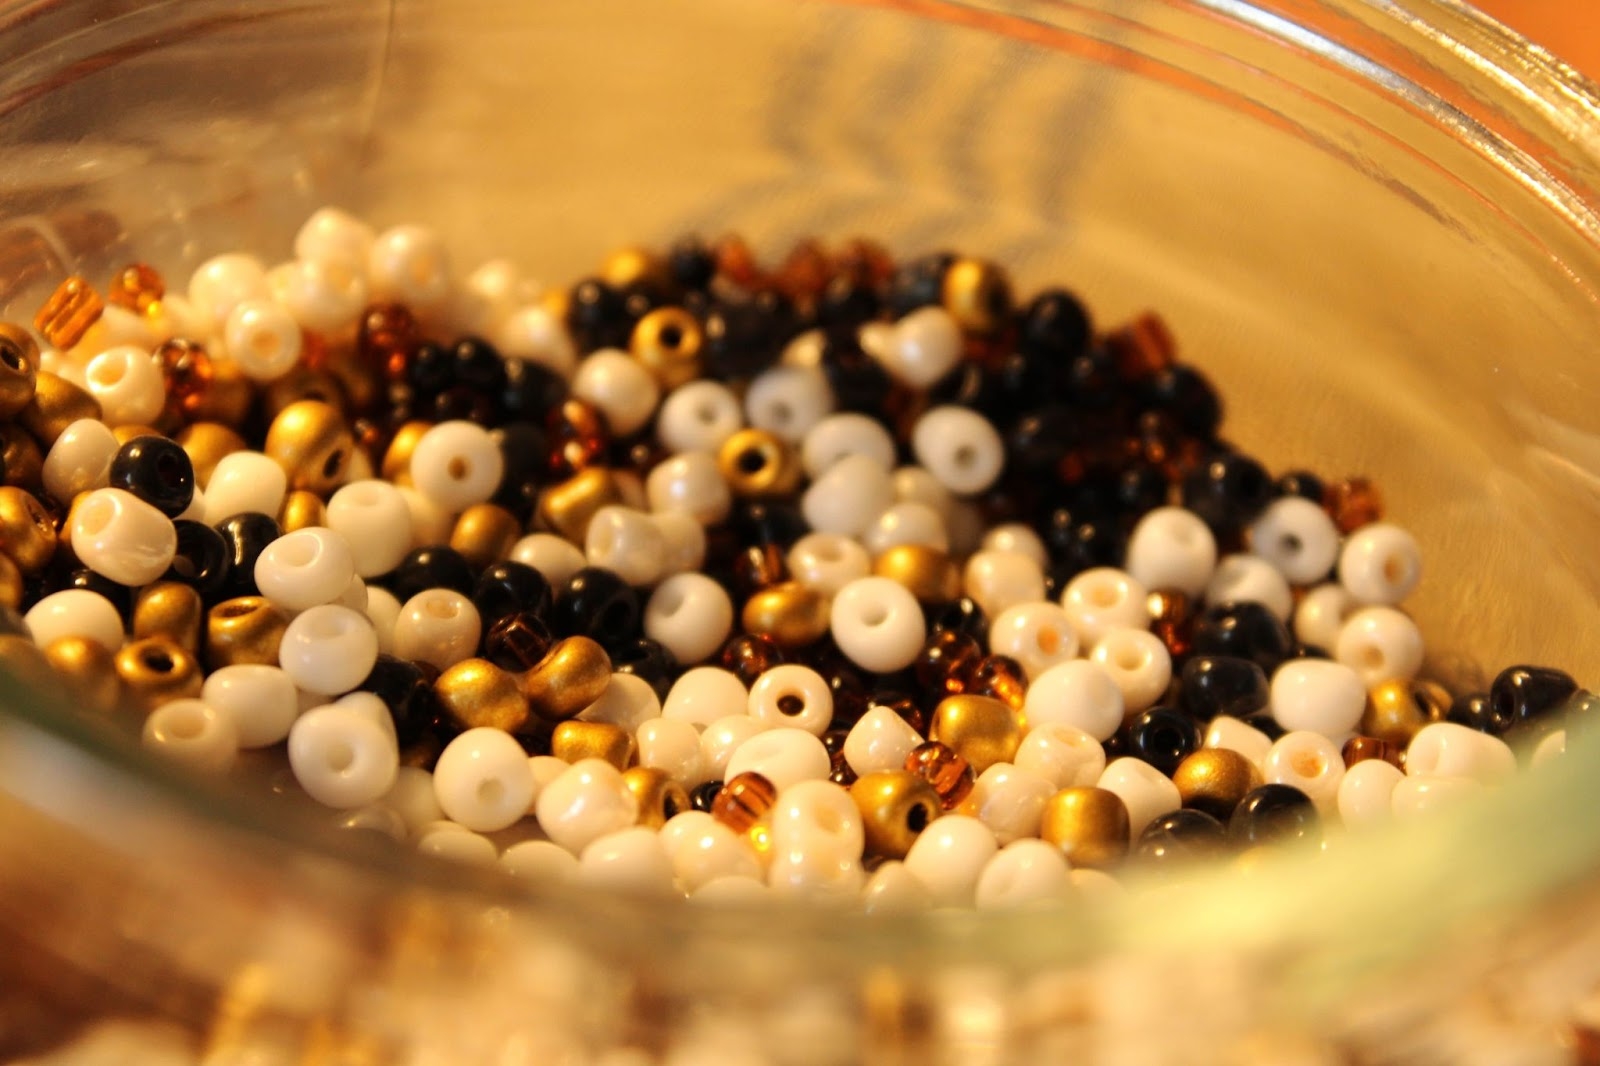 Illustration de perles blanches, noires et dorées dans un bocal.